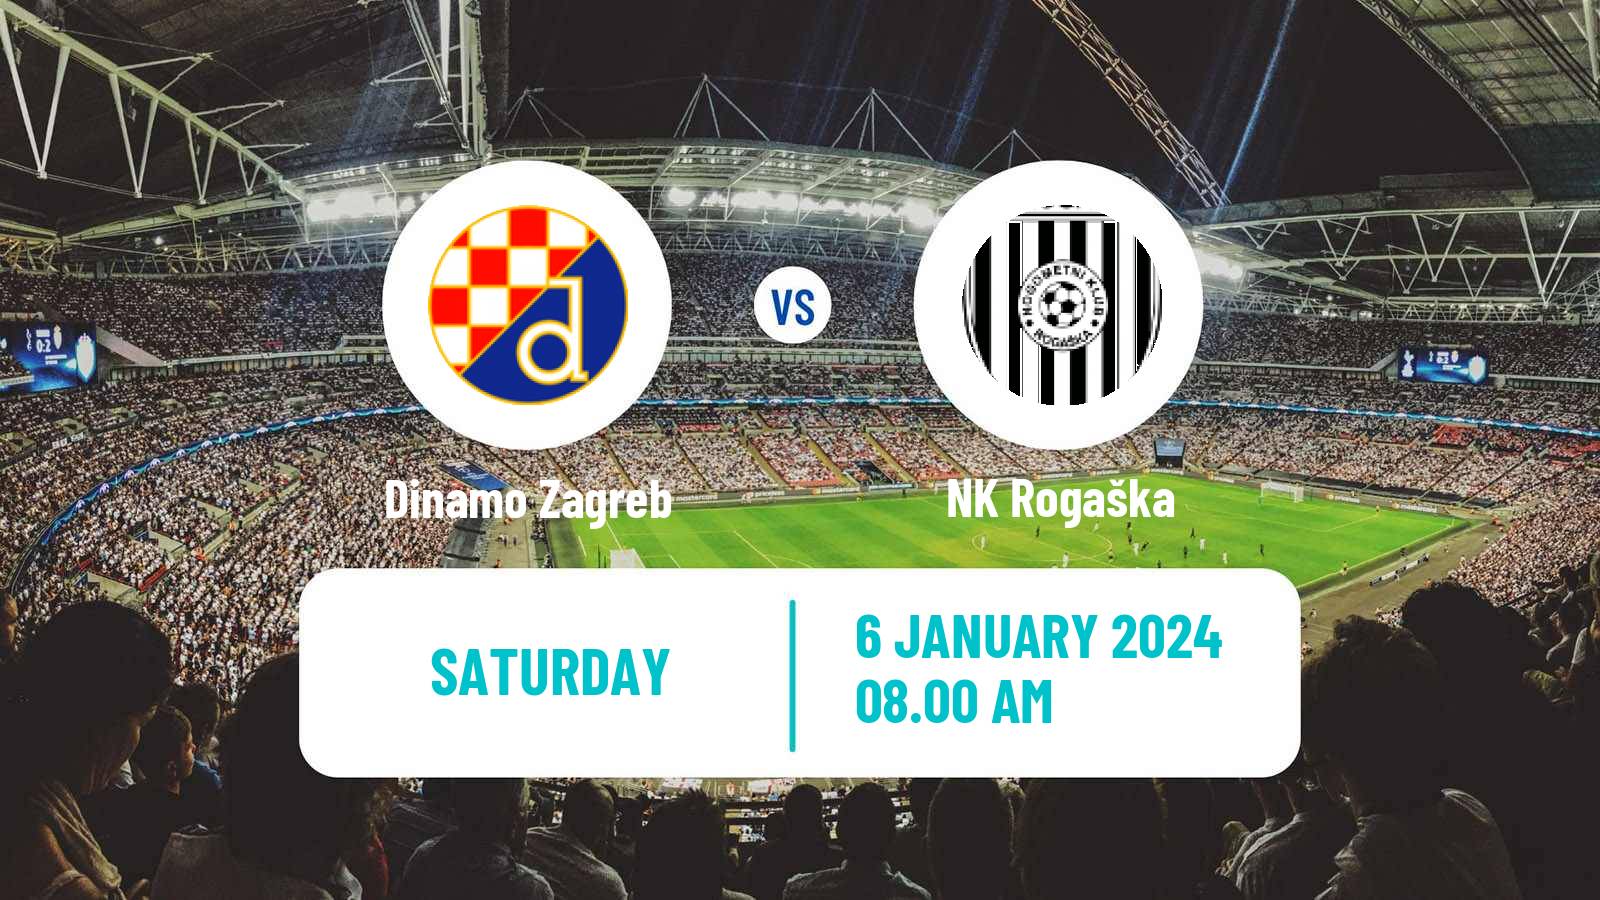 Soccer Club Friendly Dinamo Zagreb - Rogaška